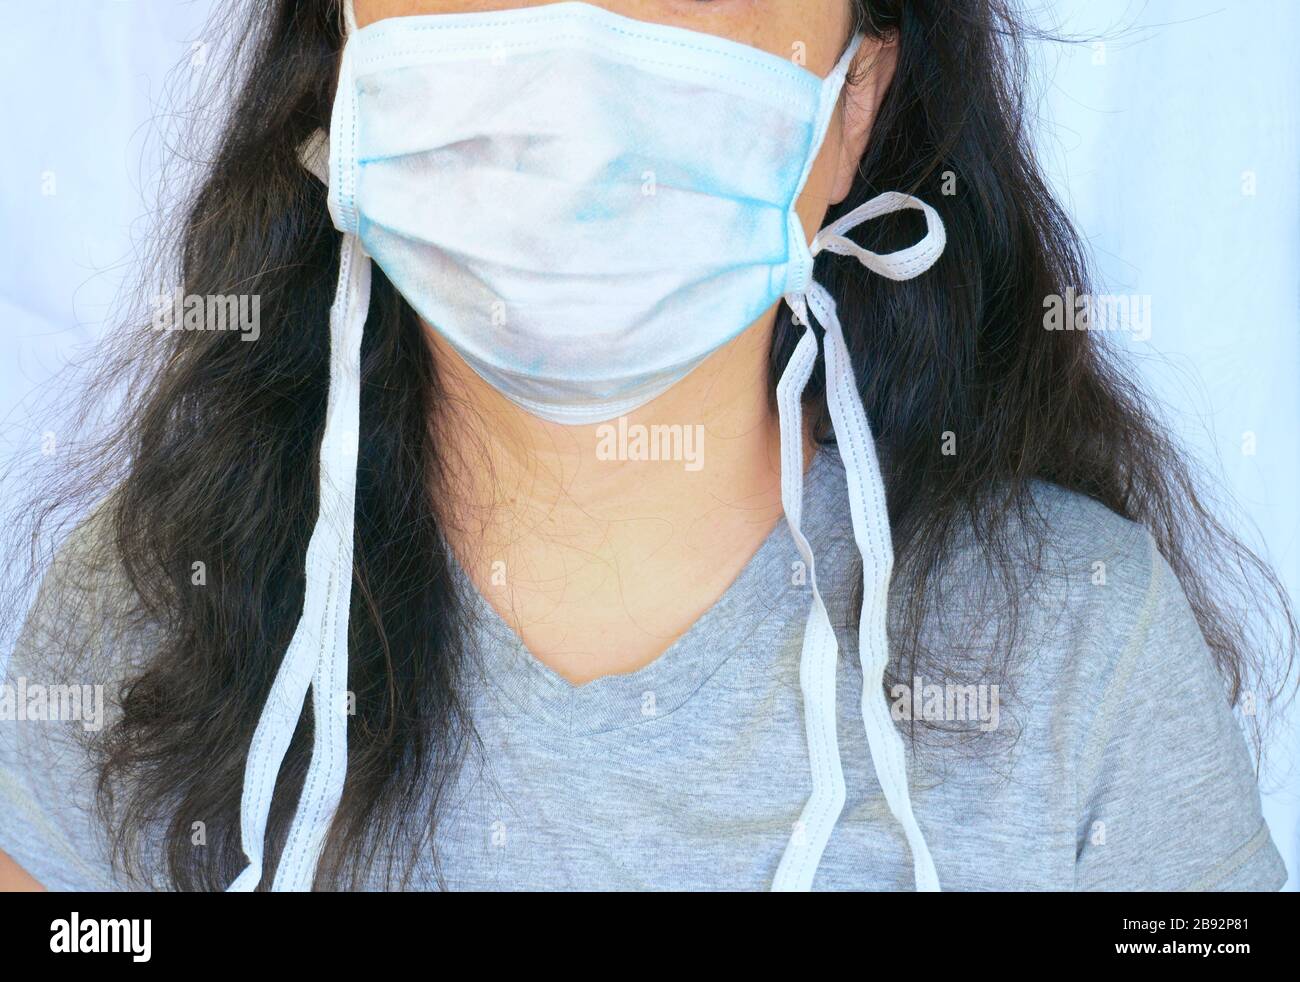 Femme portant un masque chirurgical préventile normal pendant la nouvelle pandémie de coronavirus, alias Covid-19. Portrait candid, visage partiel et corps et cheveux longs. Banque D'Images